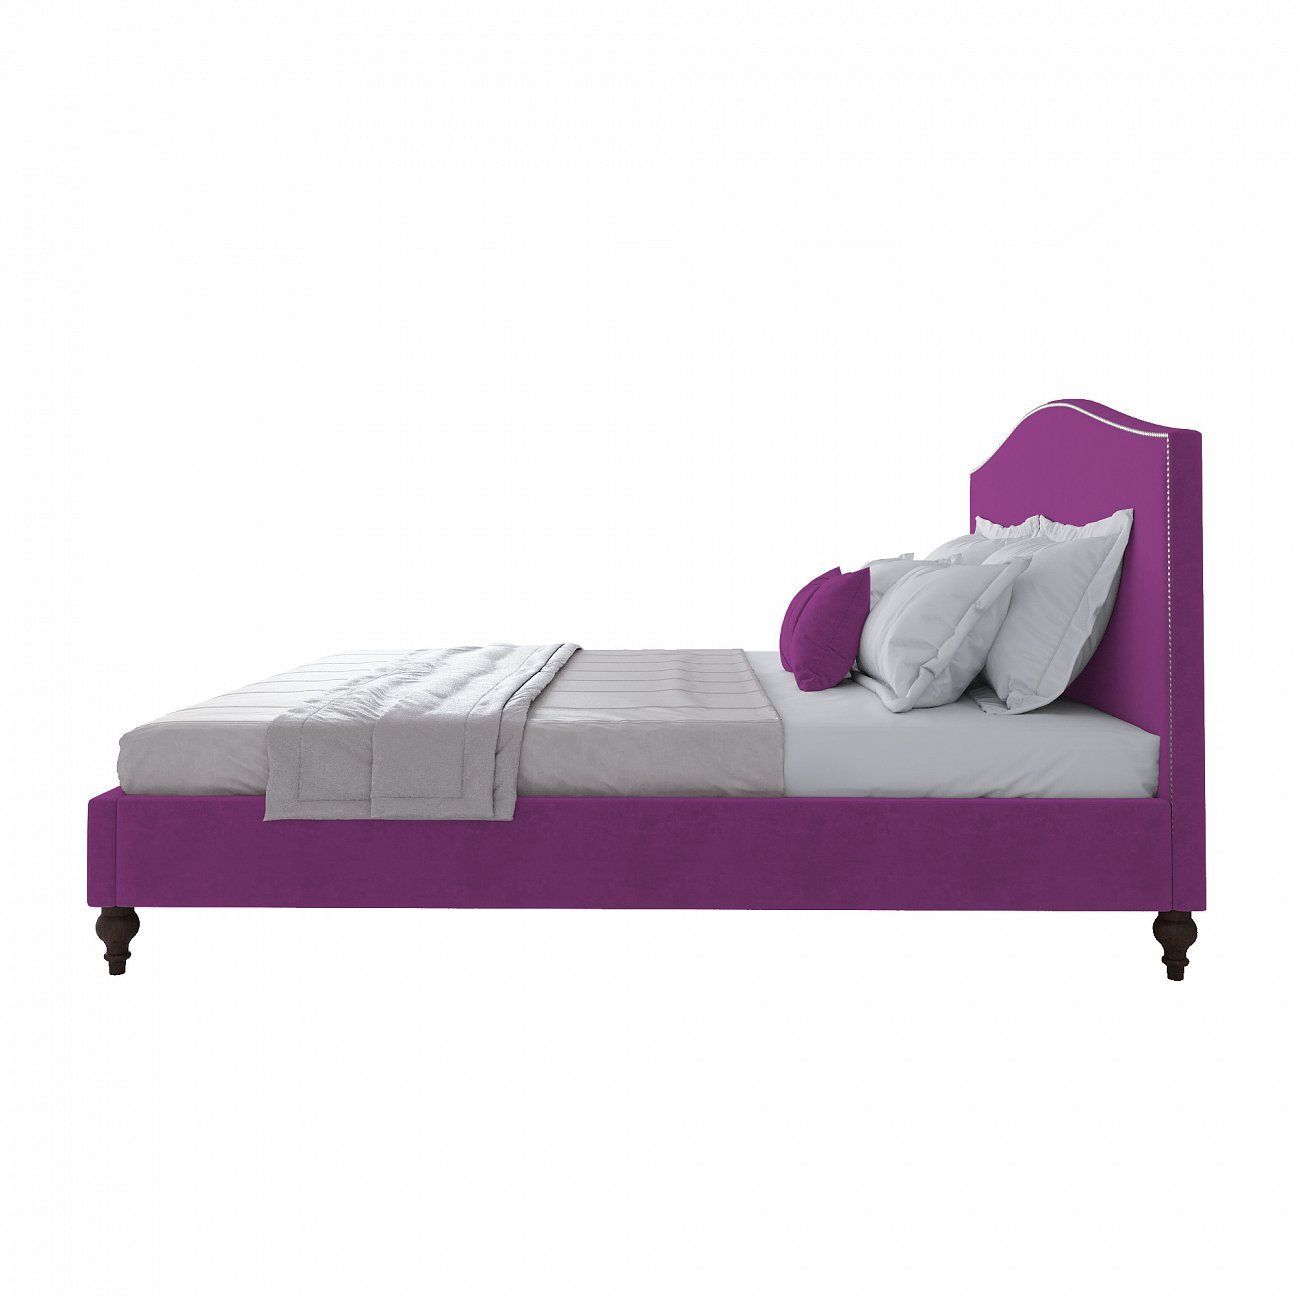 Double bed 180x200 cm purple Fleurie